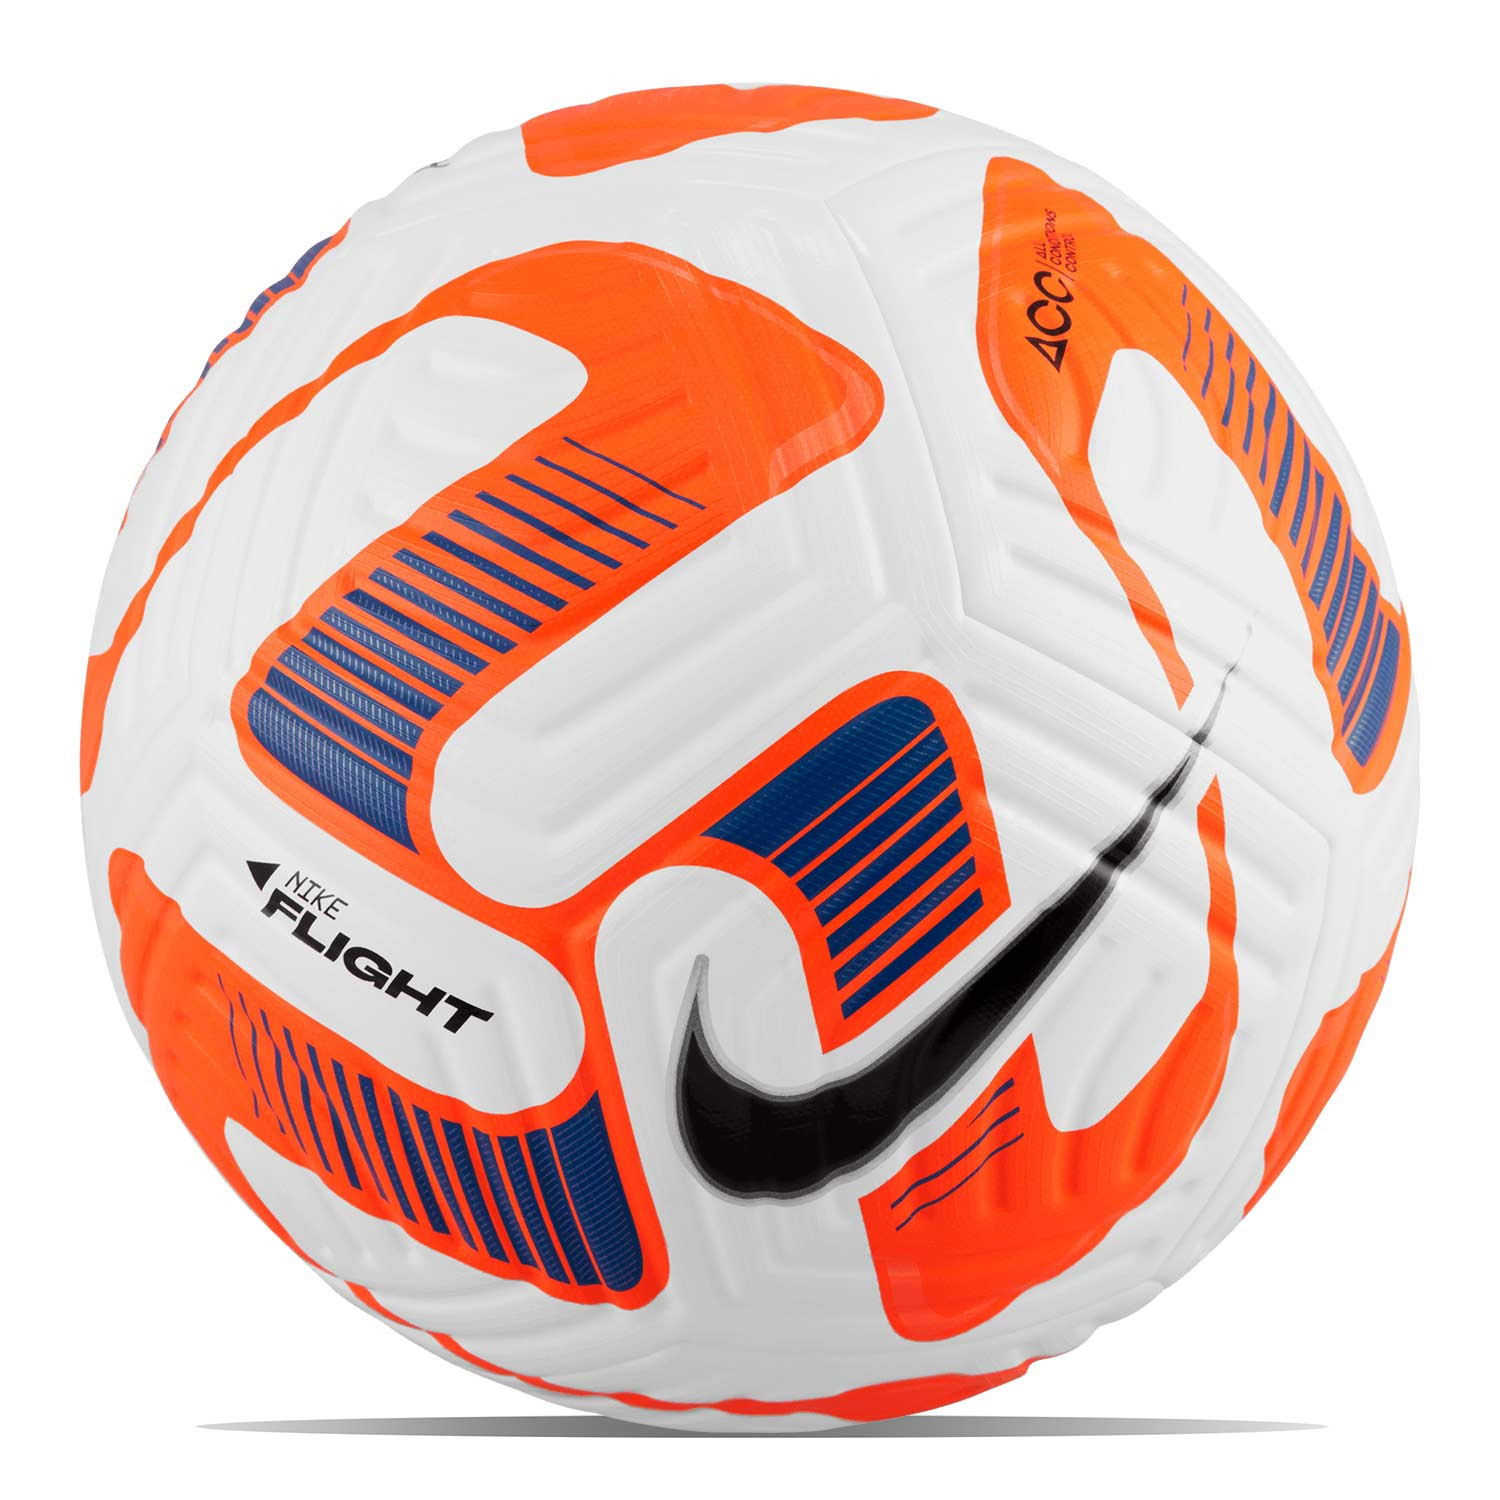 Ejecutante circulación Ceder el paso Balón Nike Flight talla 5 blanco y naranja | futbolmania